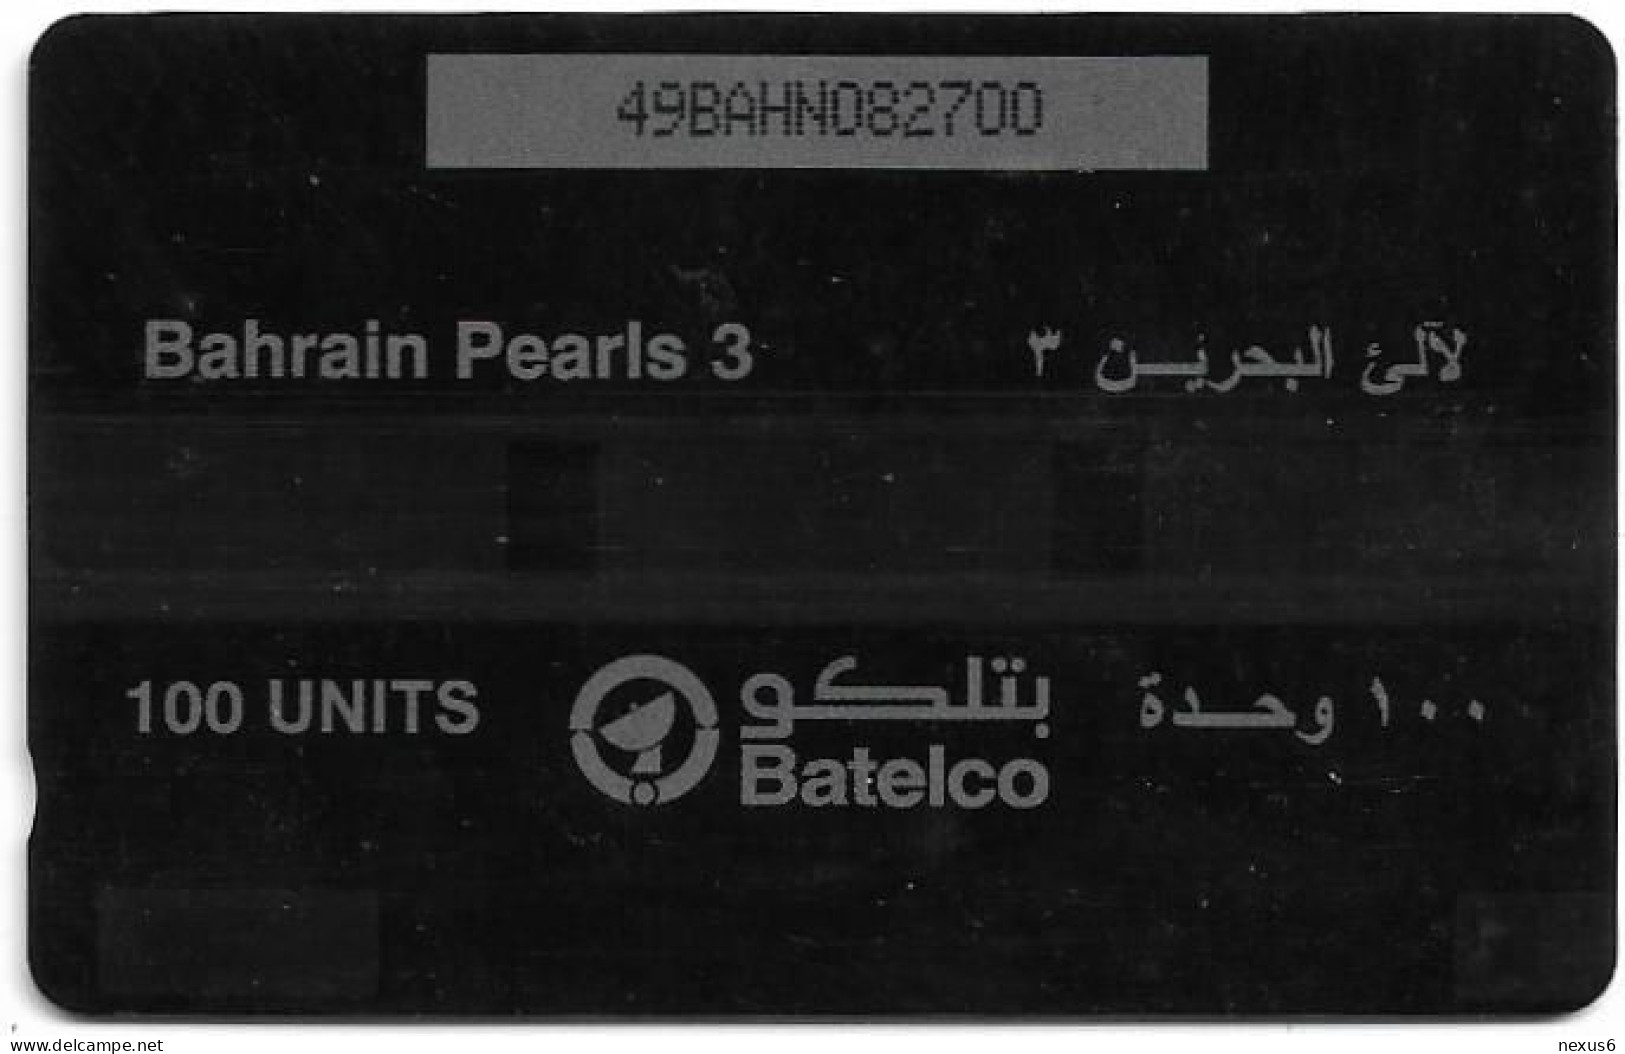 Bahrain - Batelco (GPT) - Pearls 3 - 49BAHN - 2001, Used - Bahrain